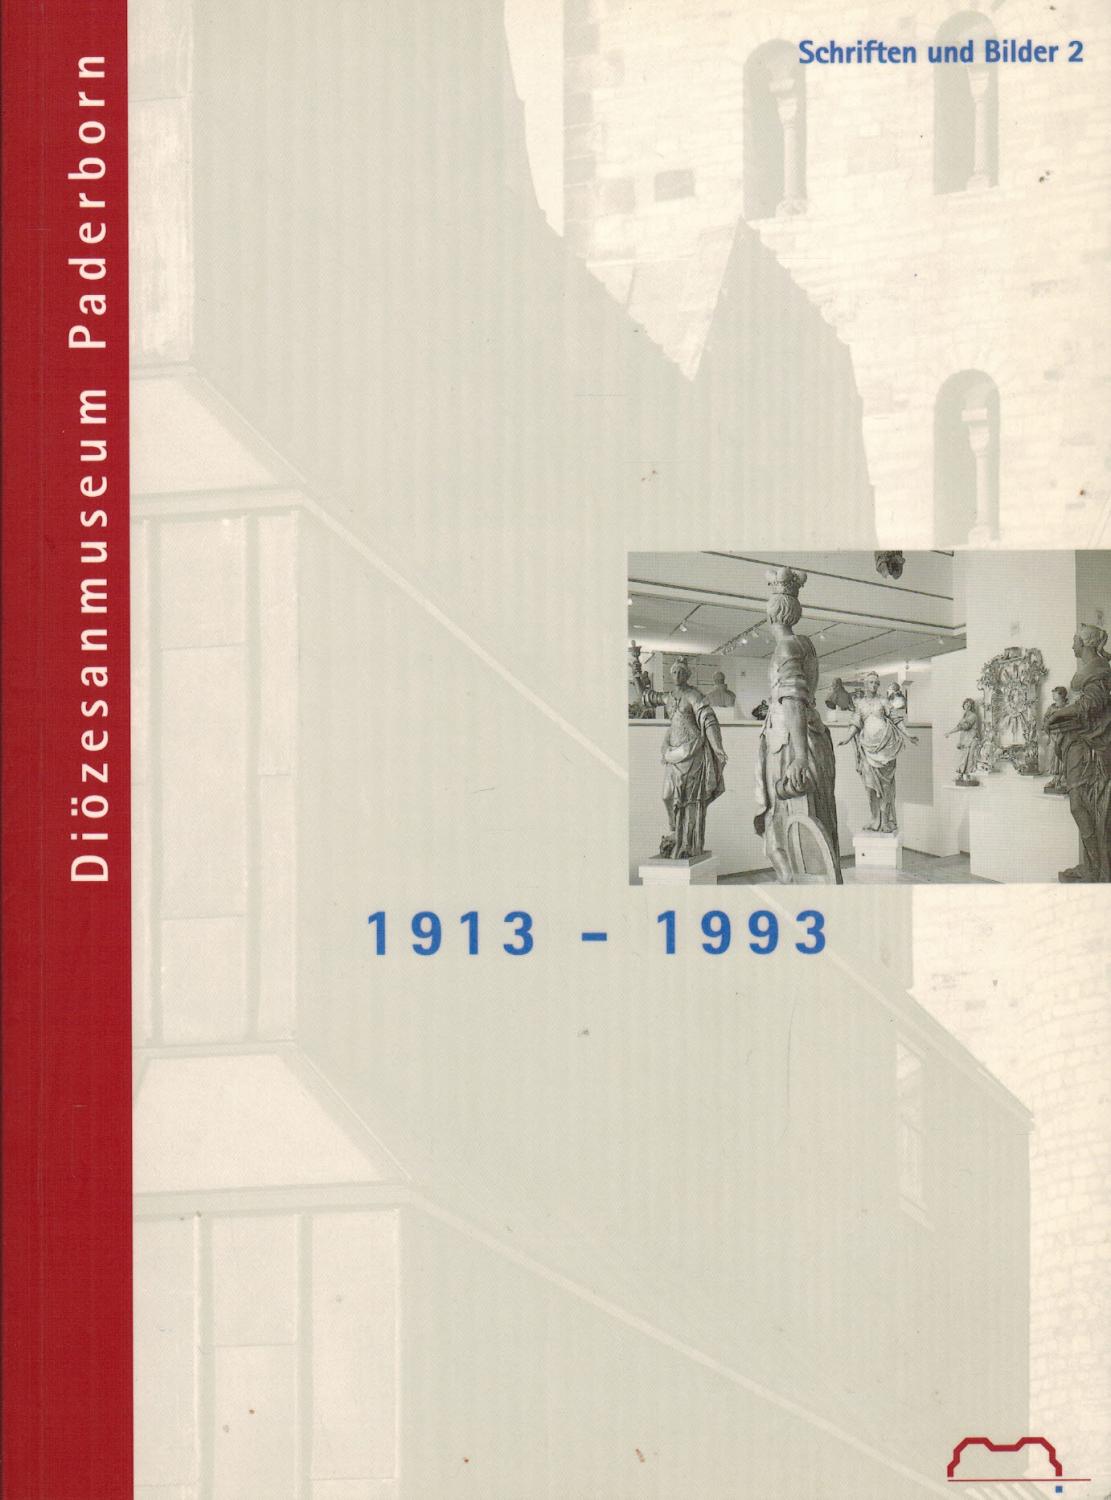 Diözesanmuseum Paderborn 1913-1993. Festschrift aus Anlass der Wiedereröffnung des Erzbischöflichen Diözesanmuseums am 18. Juni 1993 - Stiegemann, Christoph